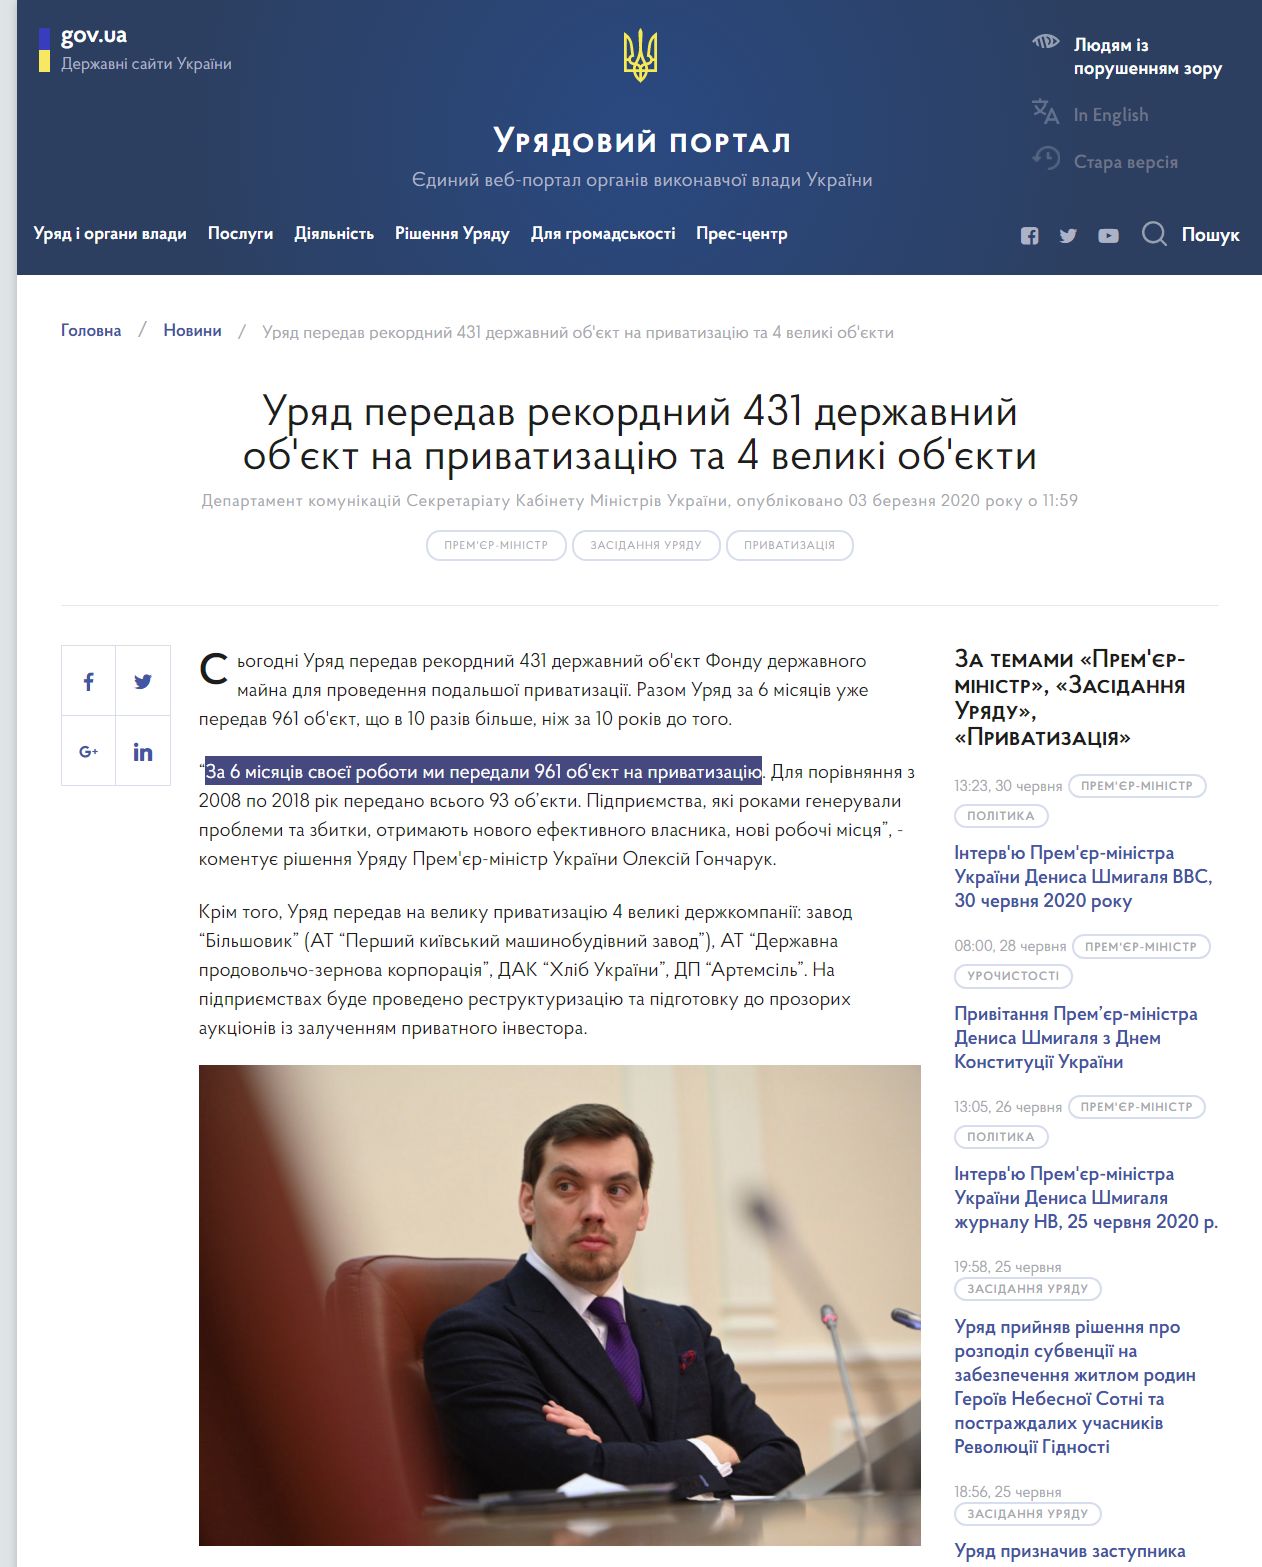 https://www.kmu.gov.ua/news/uryad-peredav-rekordni-431-derzhavnij-obyekt-na-privatizaciyu-ta-4-veliki-obyekti